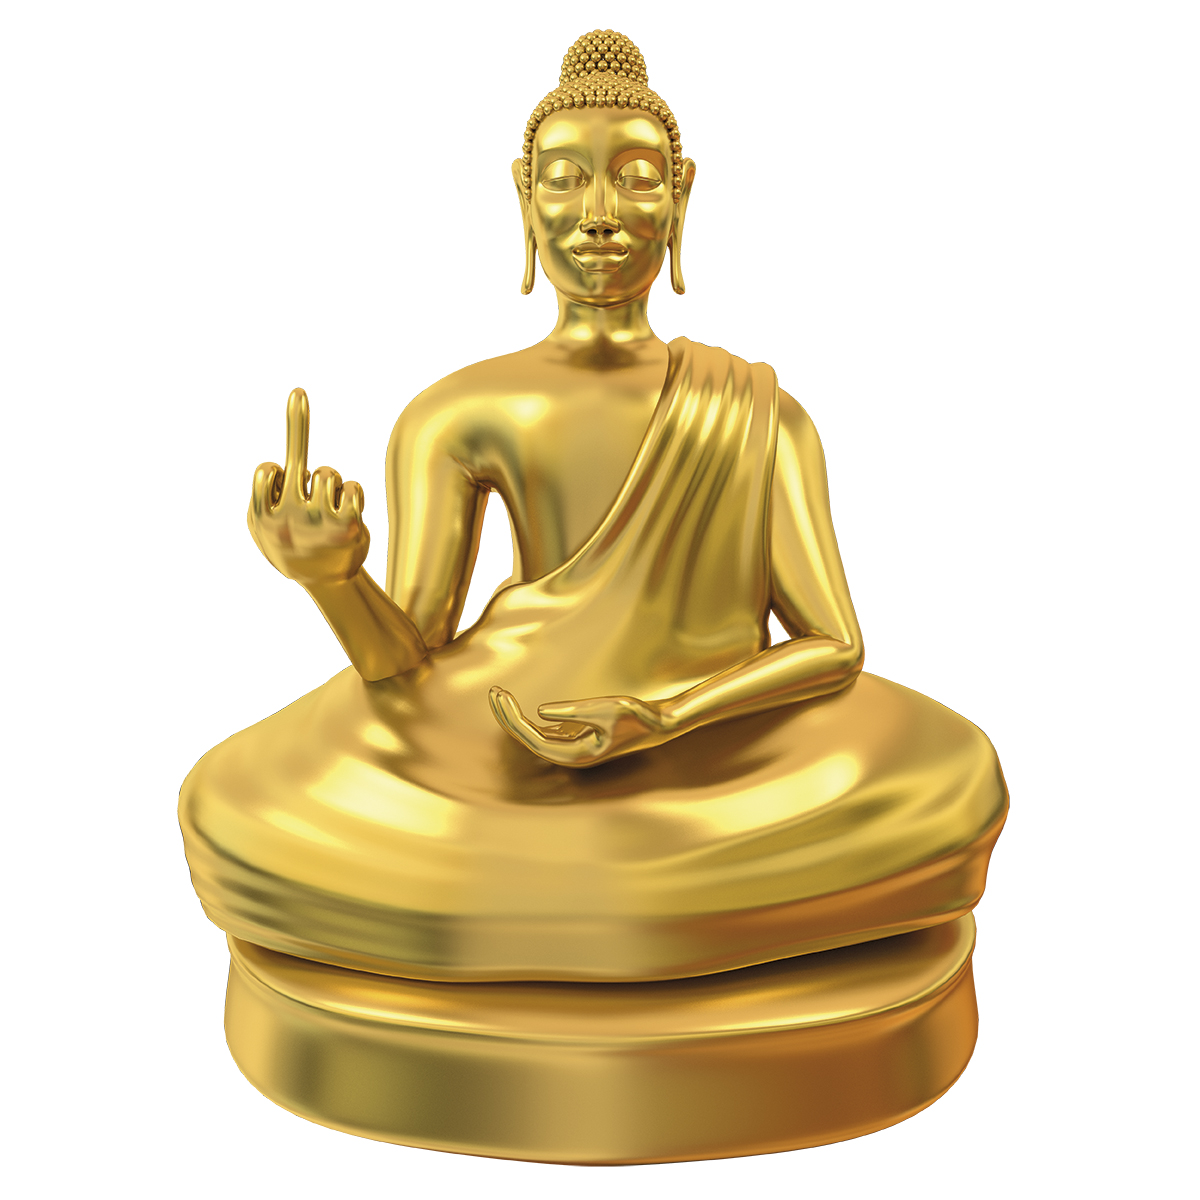 Am Arsch vorbei - Buddha Statue 3227 - 2